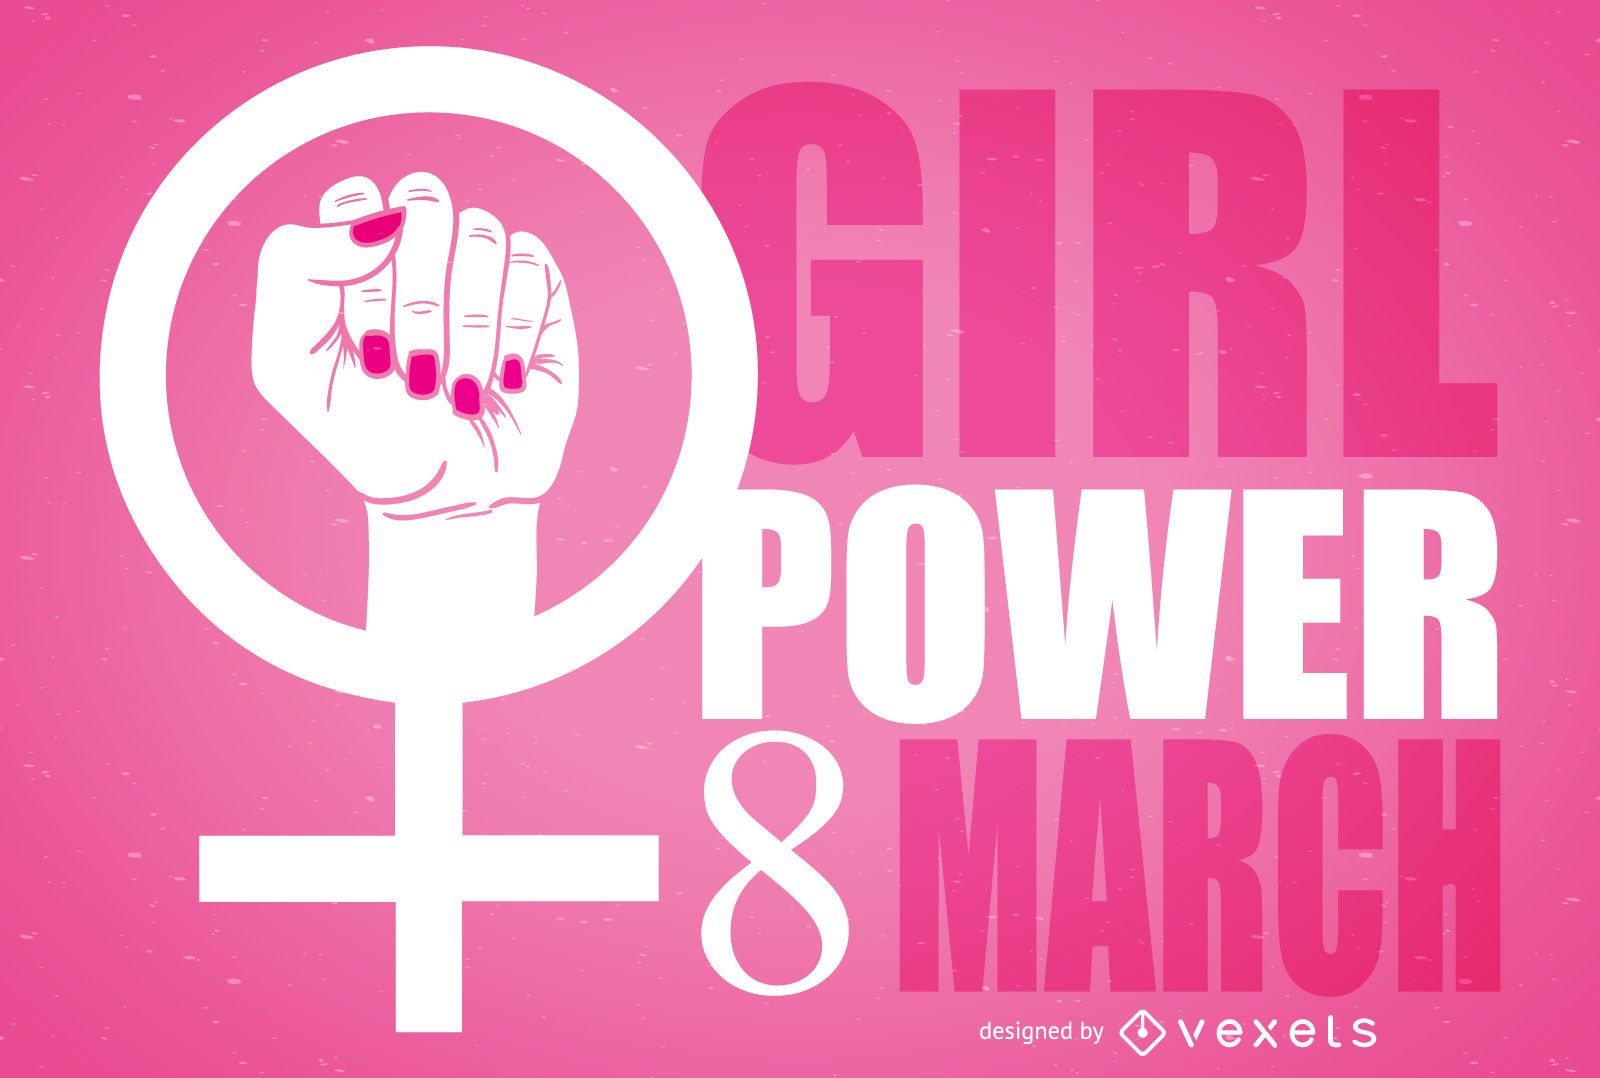 8 Mart Kadınlar Günü şiirleri 2,3,4,5 kıtalık | 8 Mart Dünya Kadınlar günü sözleri, mesajları